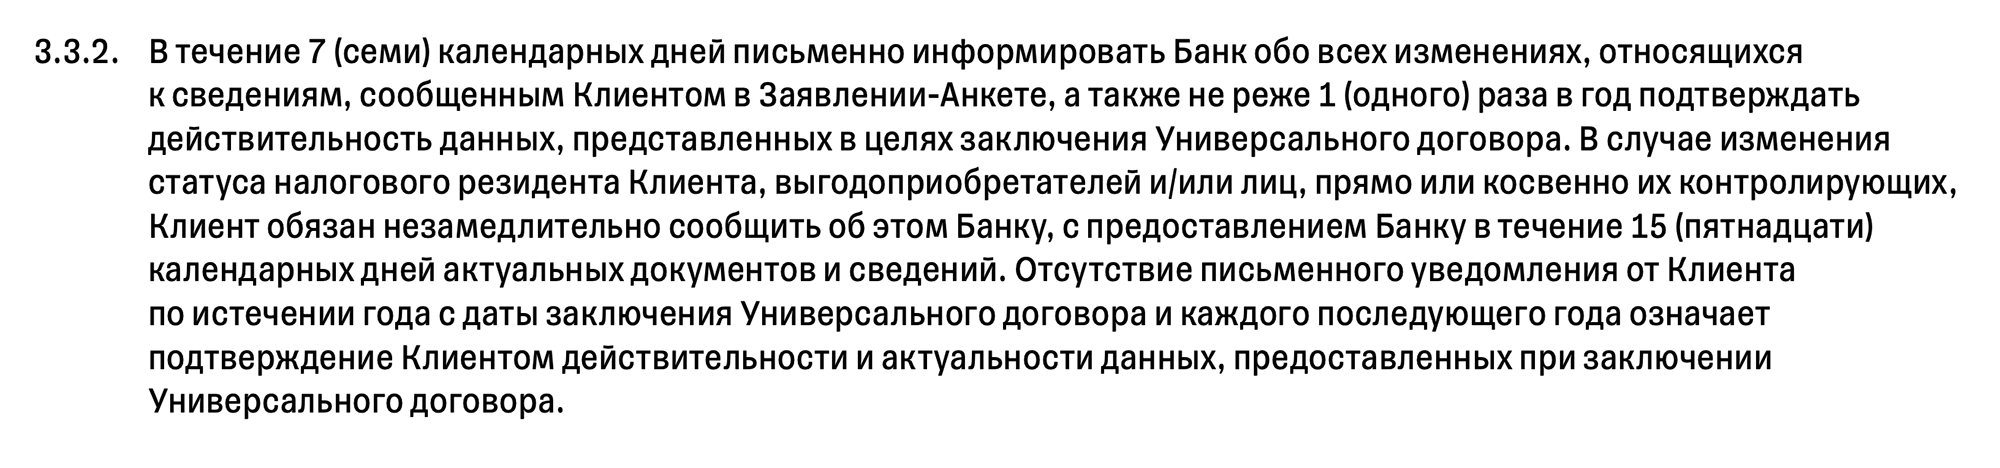 Например, действующие клиенты Тинькофф должны в течение семи дней уведомить банк о любых изменениях в анкете. Источник: tinkoff.ru